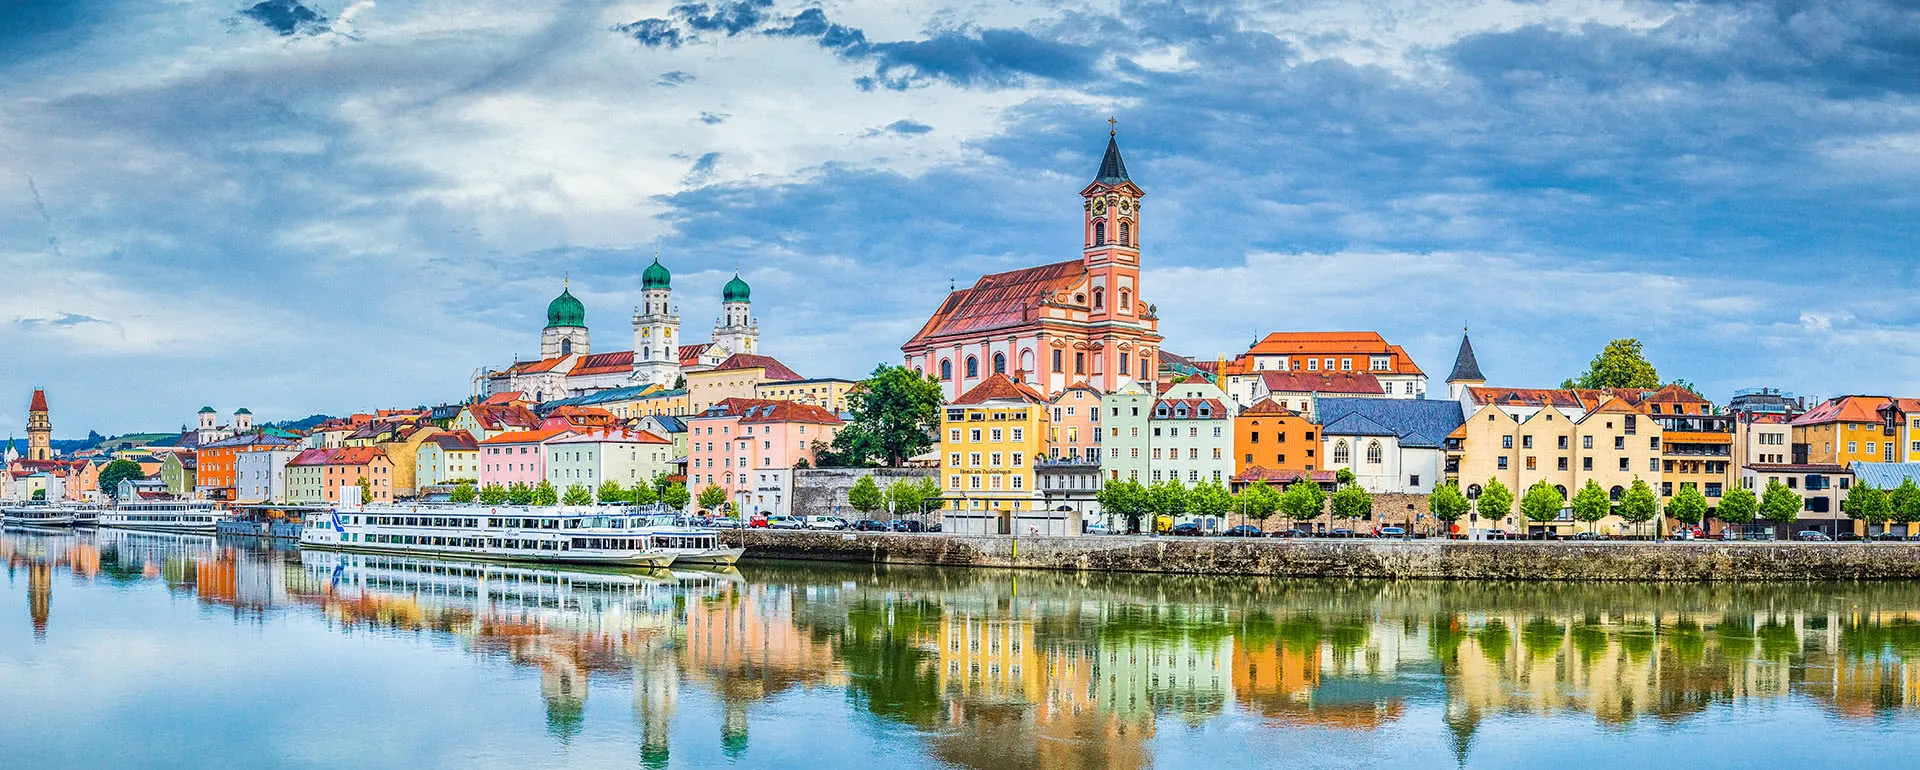 Meeting und Tagungsort Passau